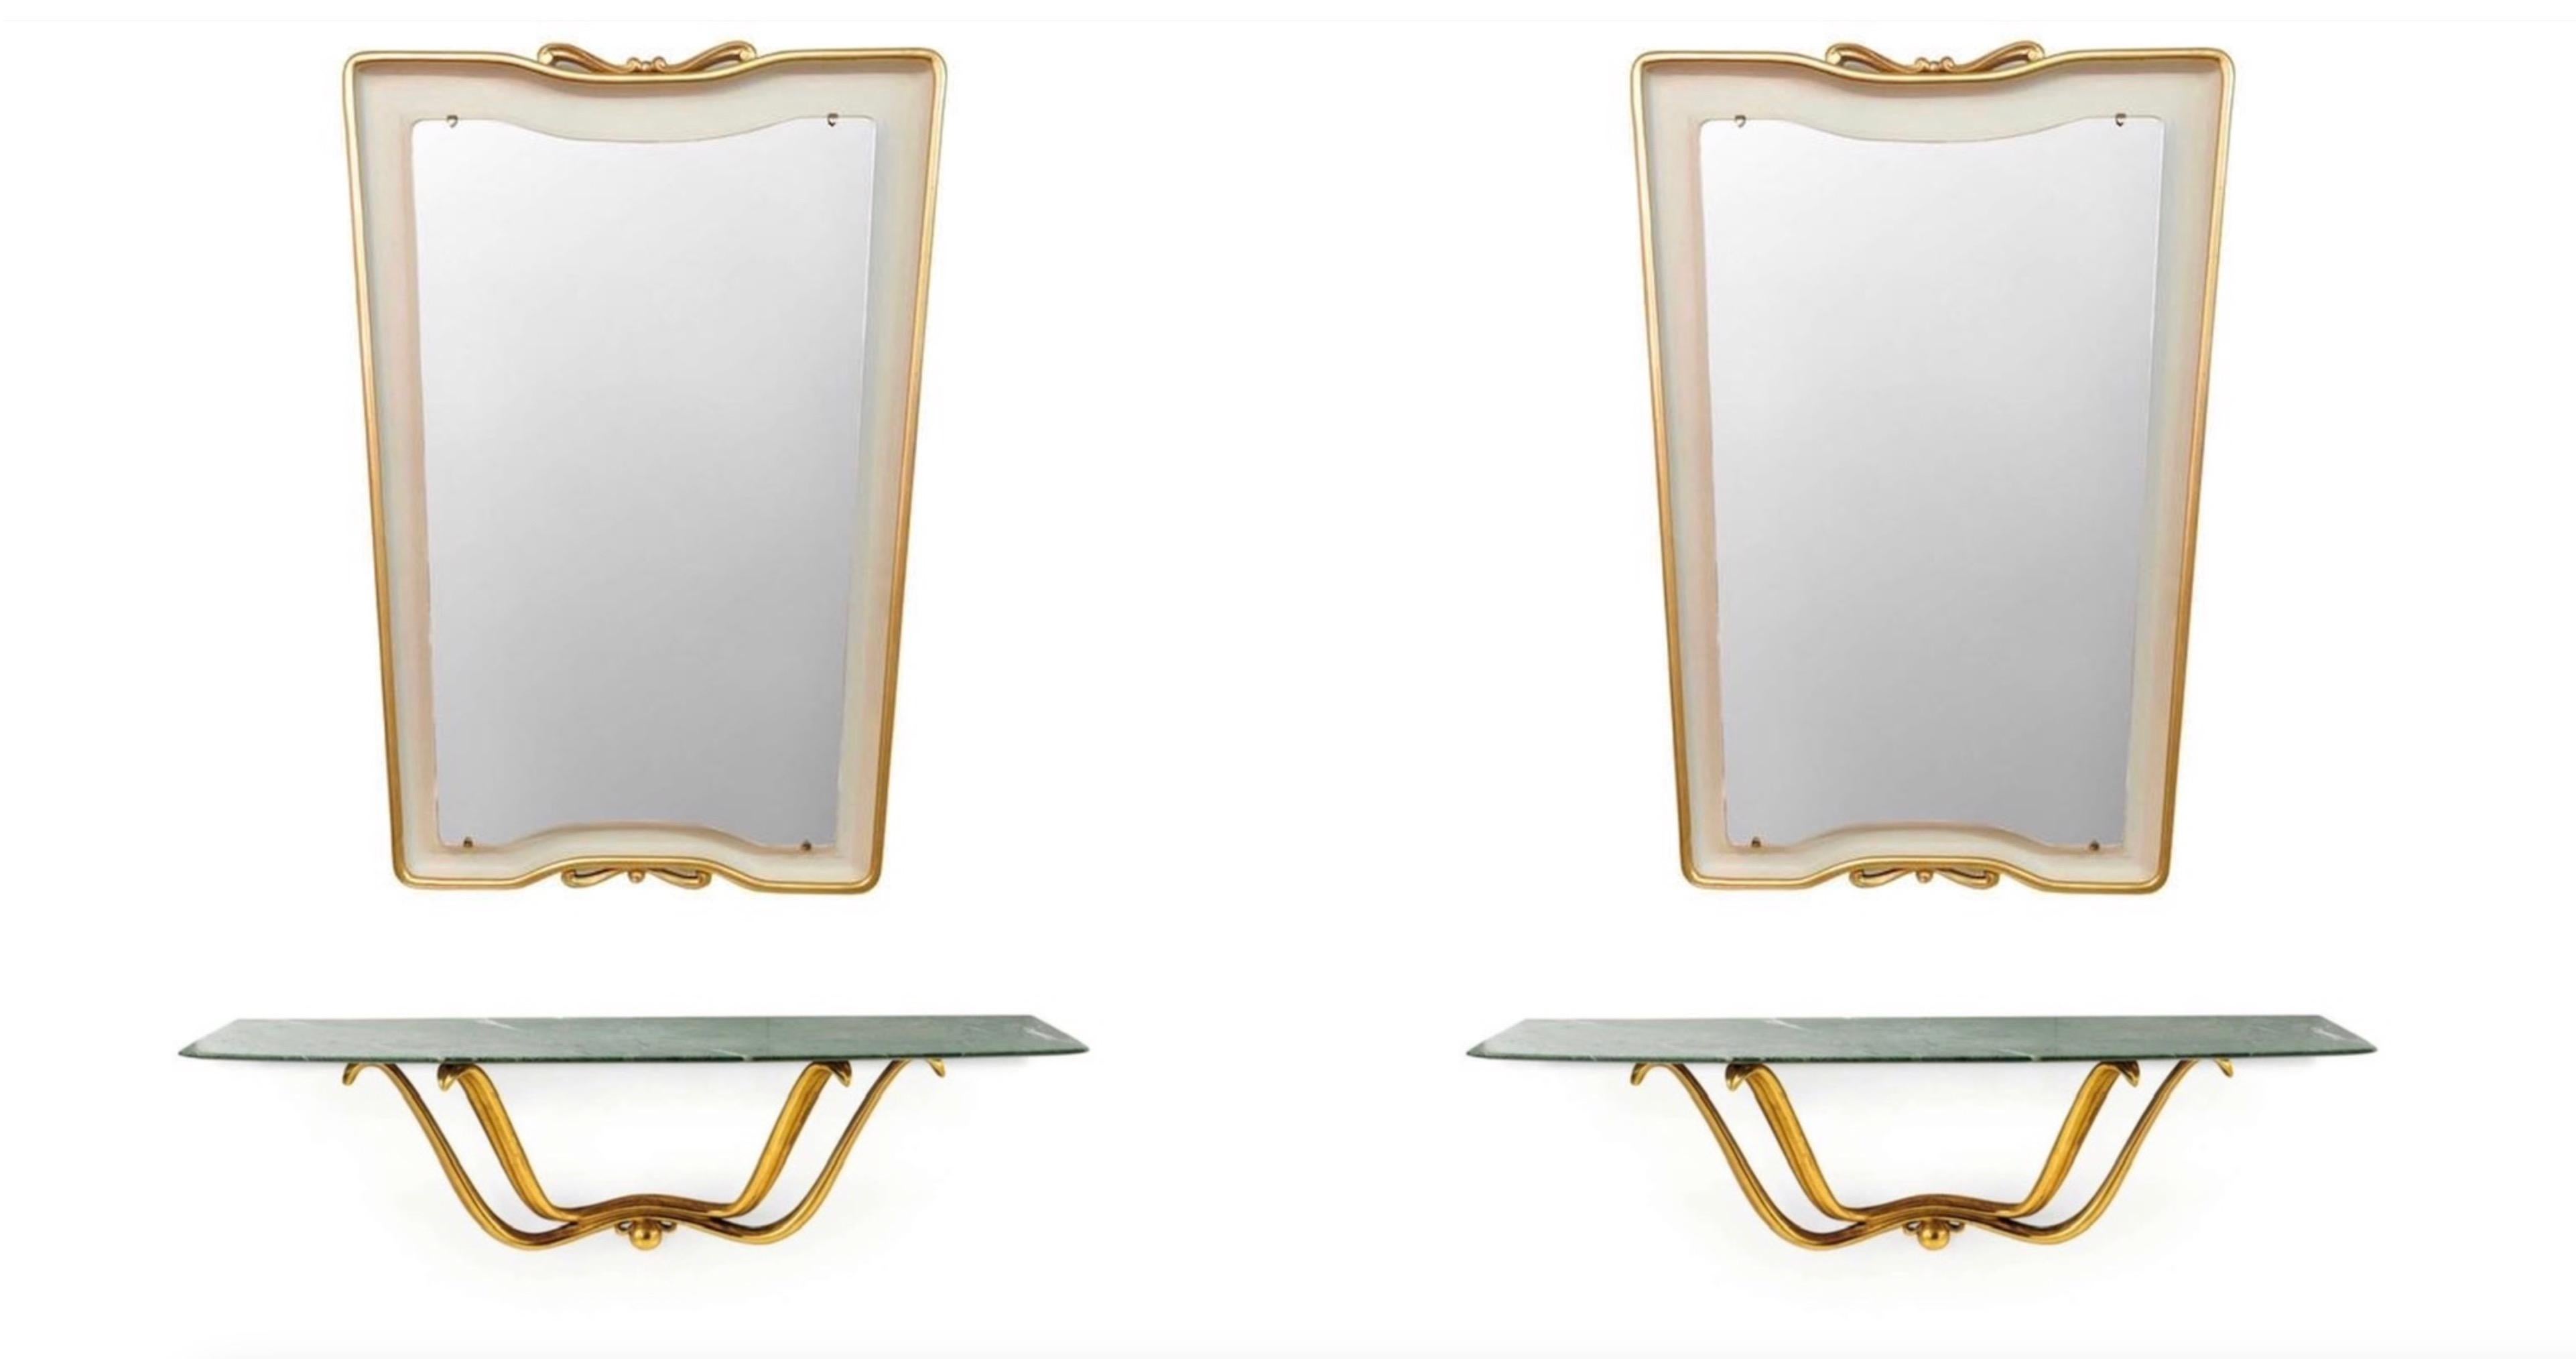 Ein außergewöhnliches und äußerst seltenes Paar von schwebenden Konsolen und Spiegeln, entworfen von Osvaldo Borsani
Geschnitzte Wandkonsole aus wasservergoldetem Holz mit Marmorplatte, deren Ränder wie ein Flugzeugflügel geschliffen